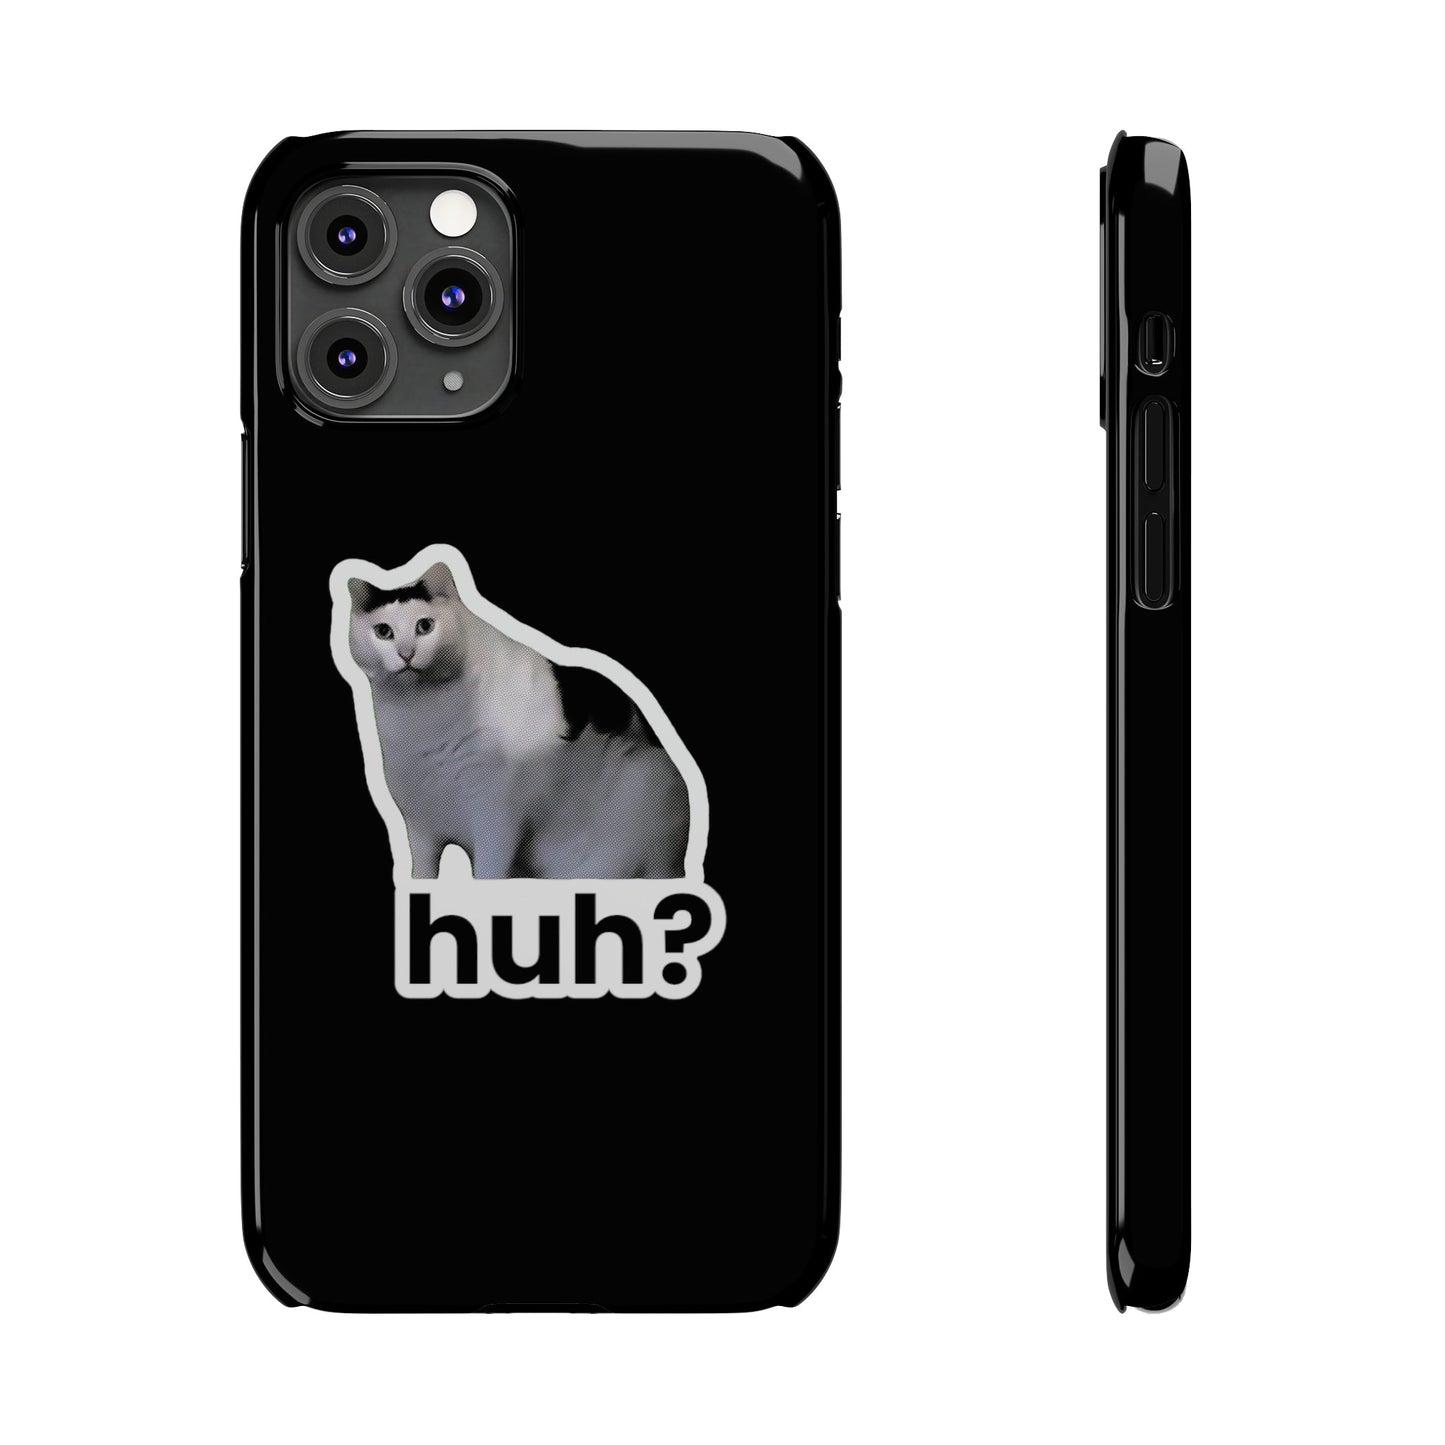 Huh Cat Meme Slim iPhone Cases - getallfun